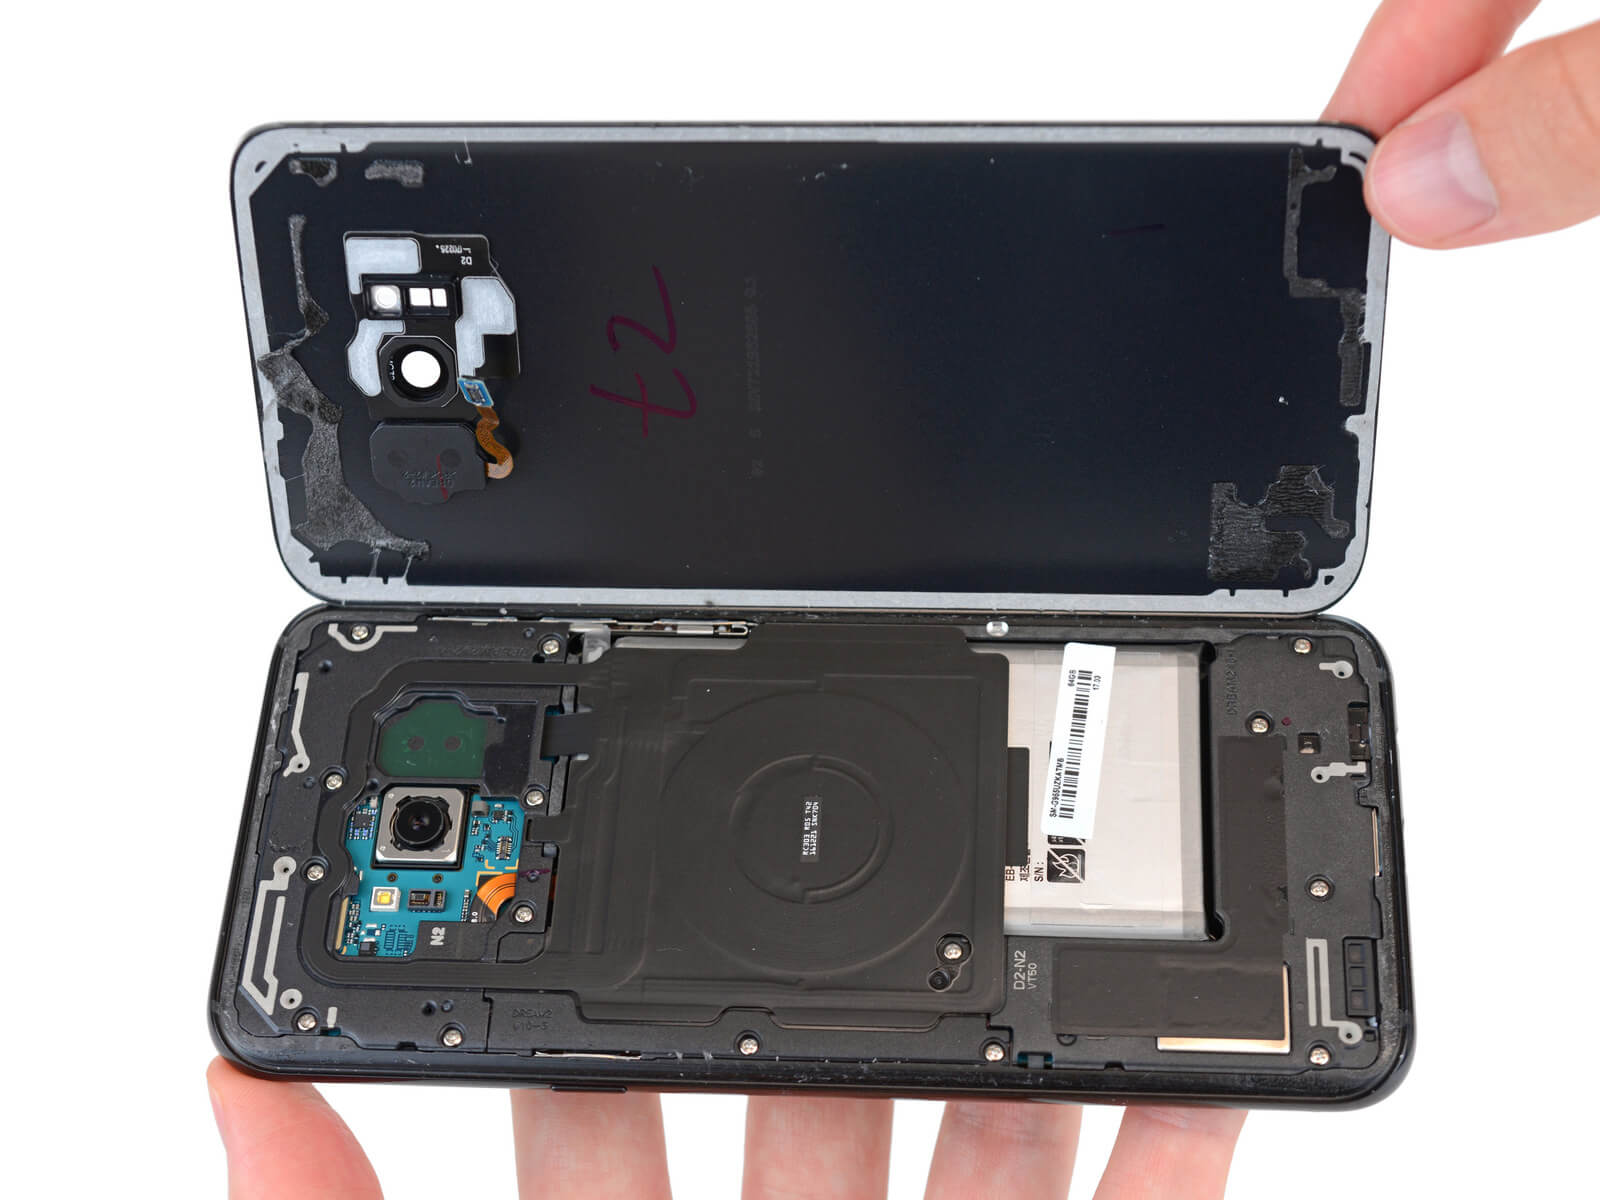 ремонтопригодность Samsung Galaxy S8 Plus